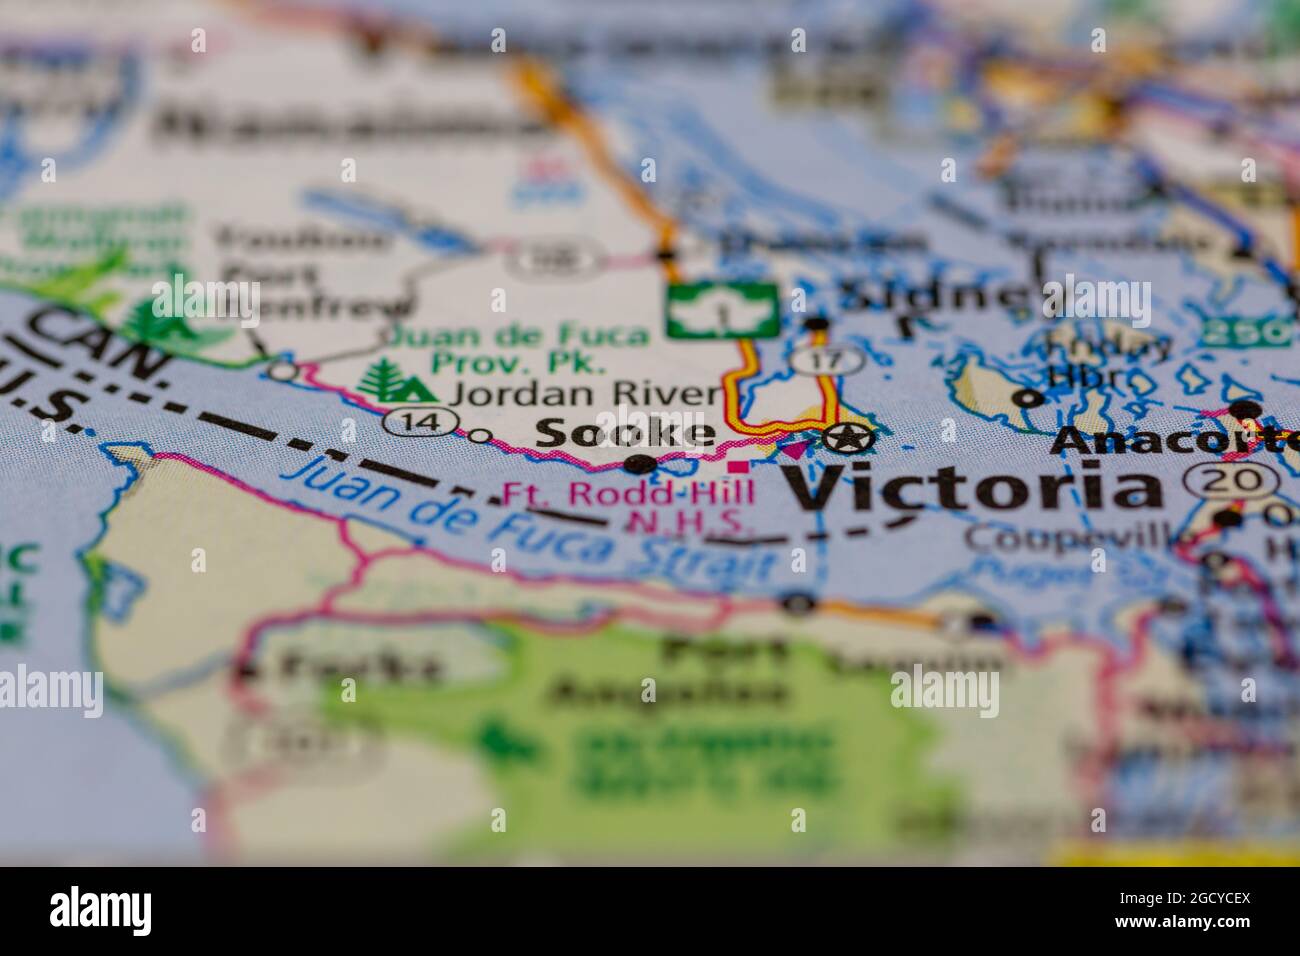 Sooke Vancouver Island Kanada auf einer Straßenkarte oder Geographie-Karte angezeigt Stockfoto